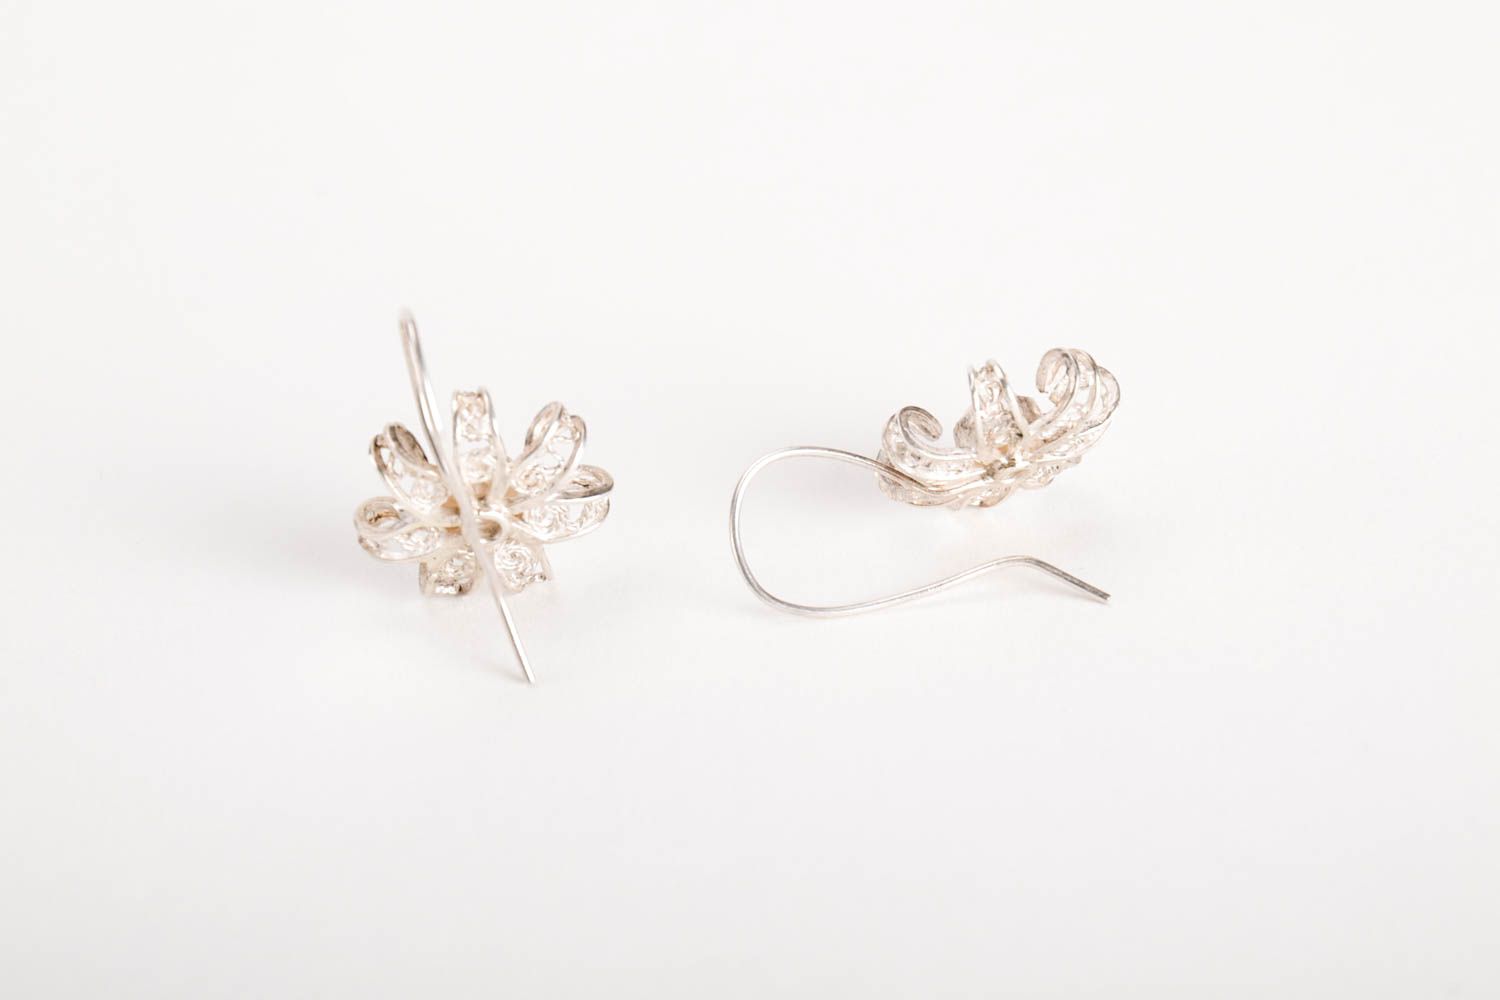 Handmade silver earrings designer earrings unusual gift for women silver jewelry photo 5